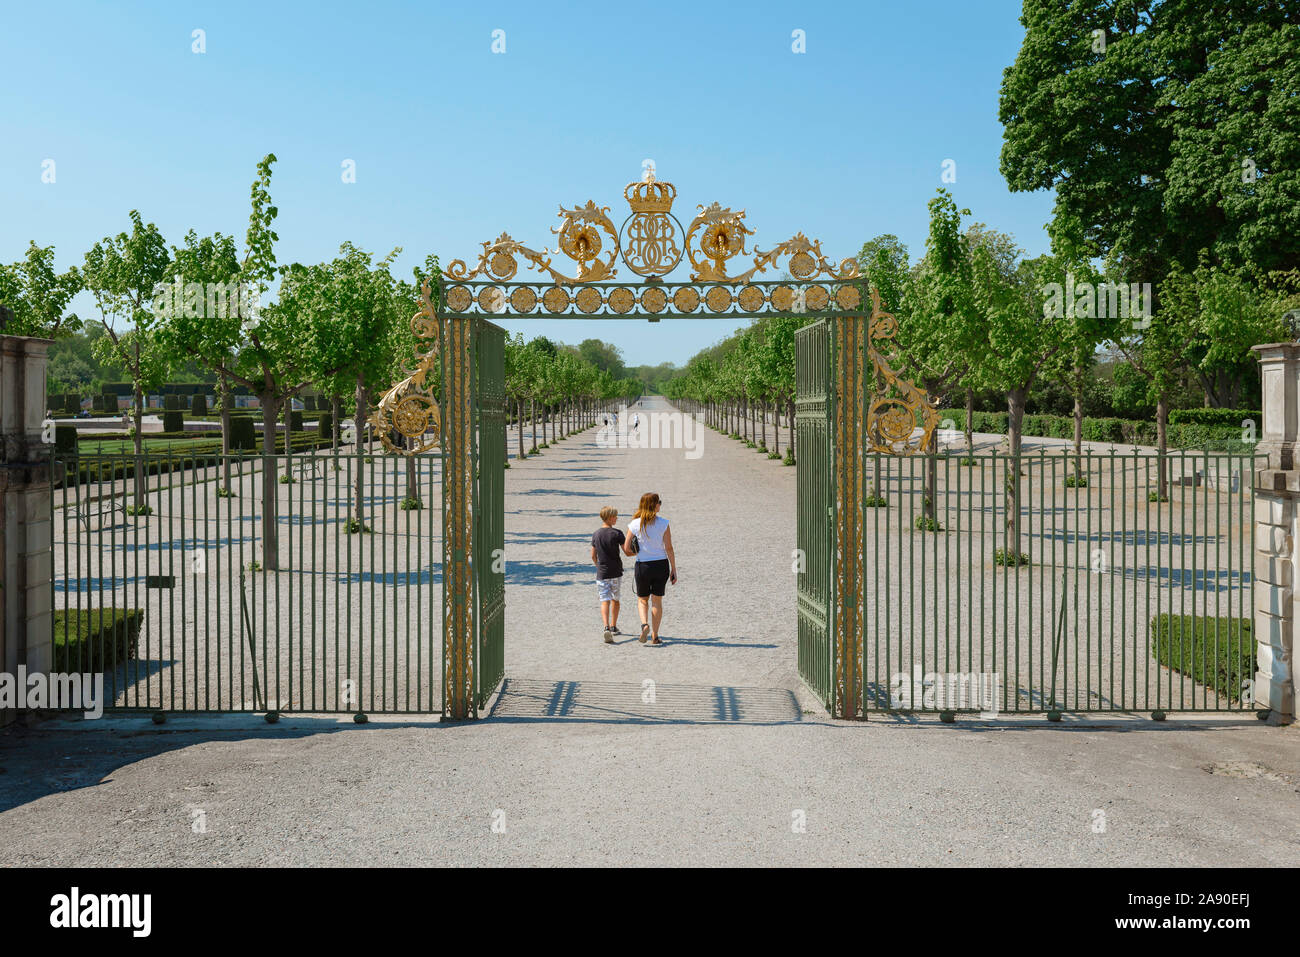 Madre Hijo viajes, vista trasera de un padre e hijo entran en el jardín barroco del Palacio de Drottningholm, residencia de la familia real sueca, Suecia. Foto de stock